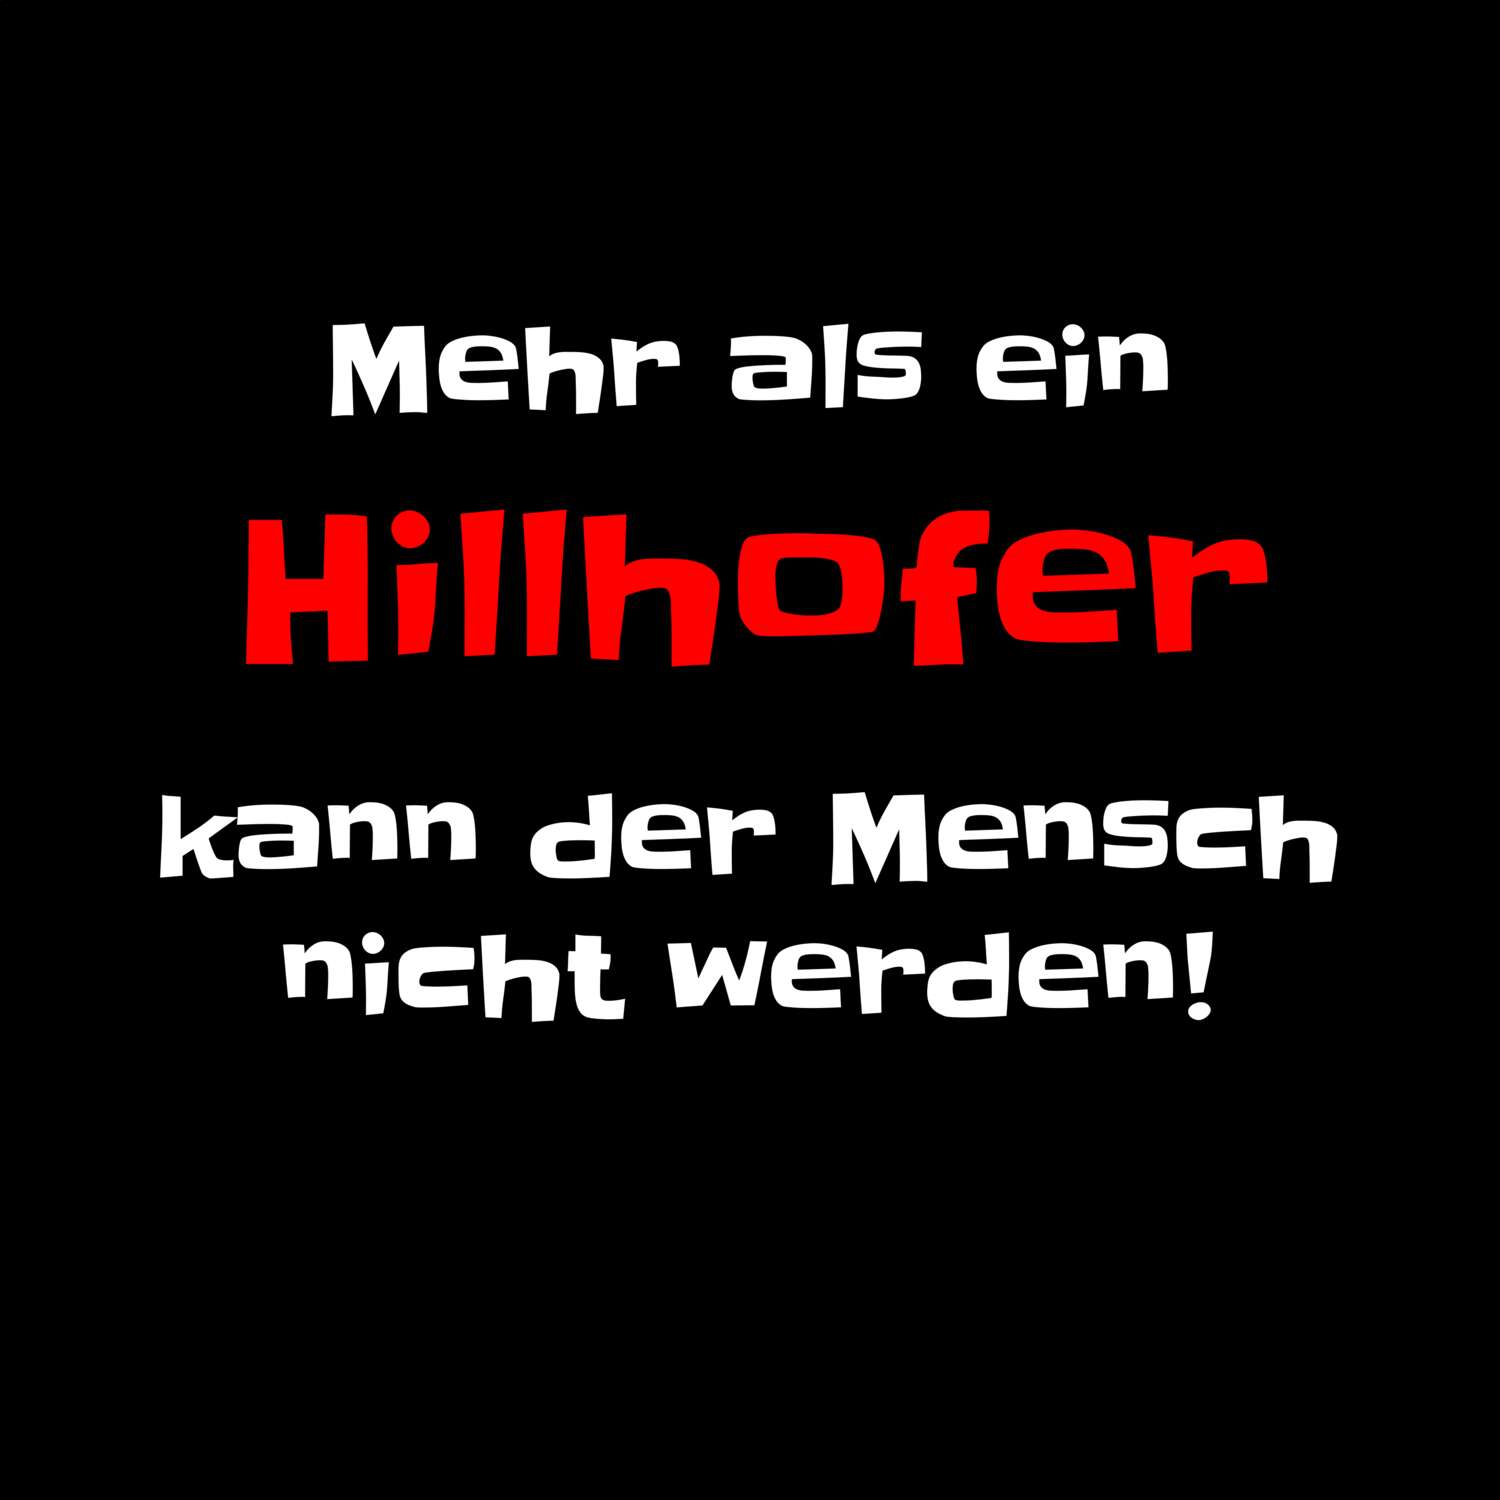 Hillhof T-Shirt »Mehr als ein«